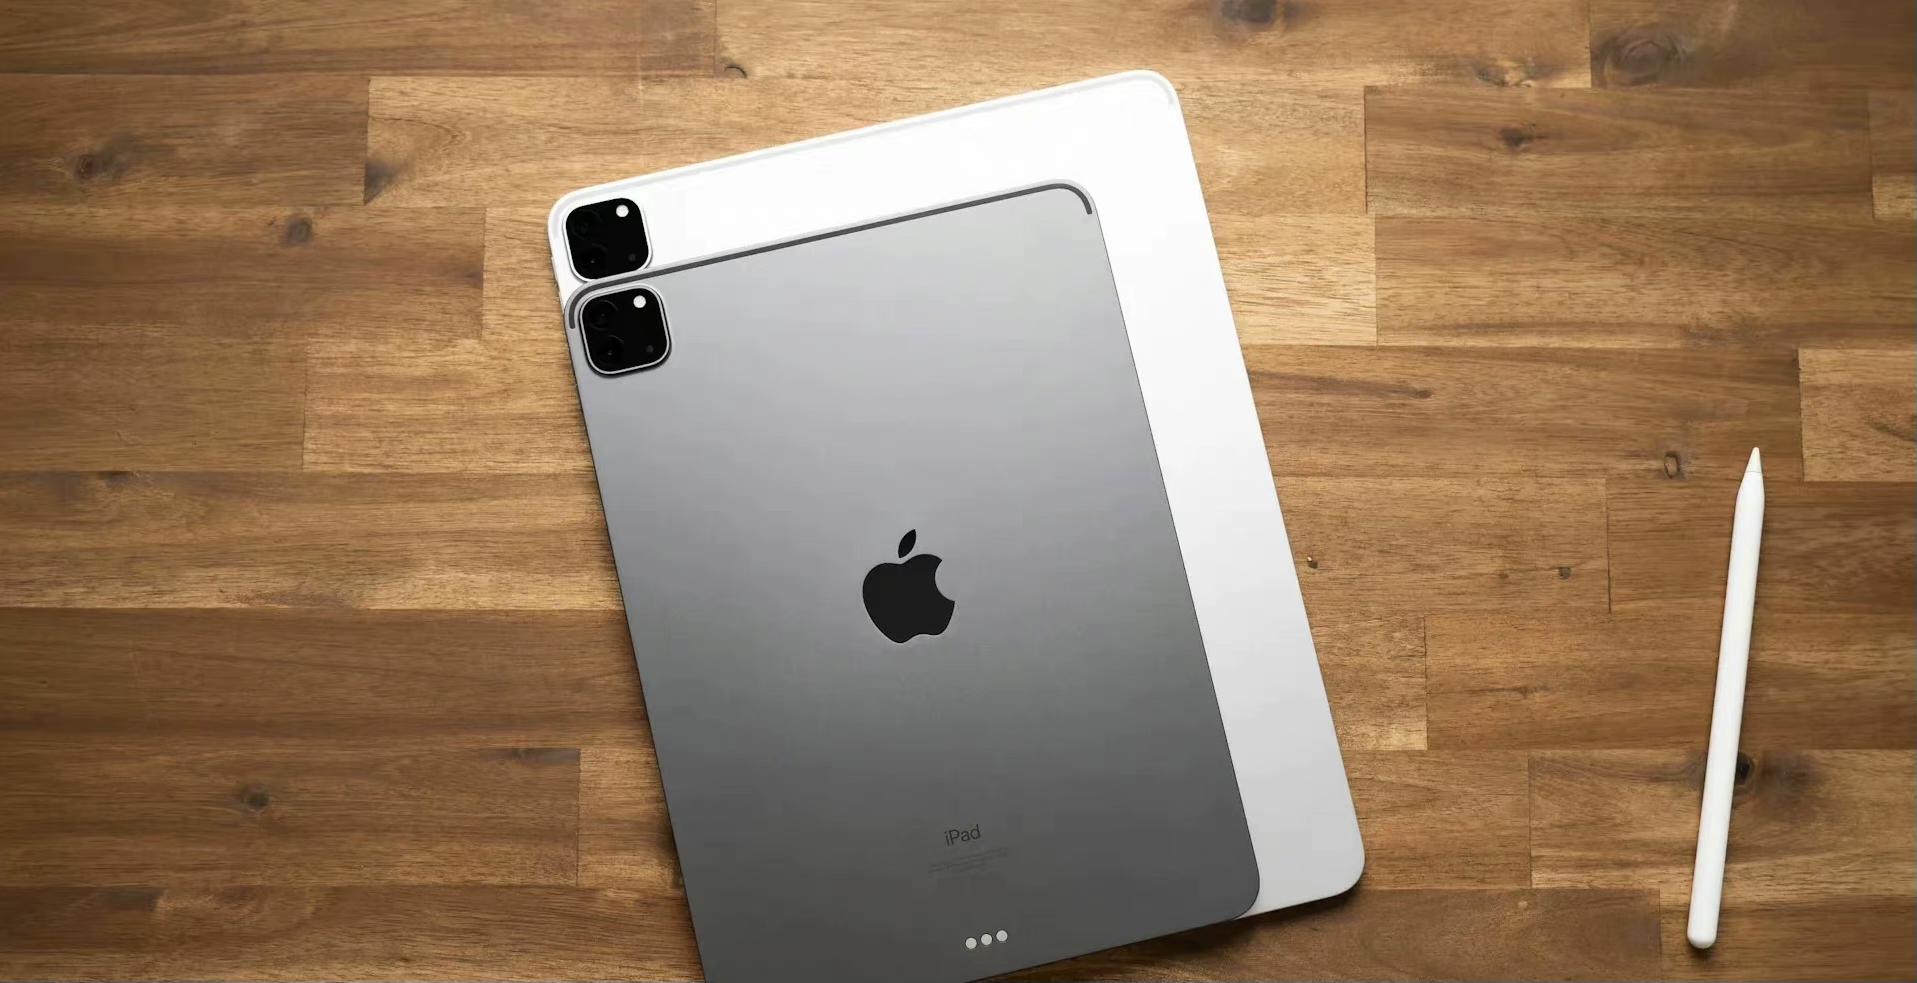 苹果将推出新款iPadPro：搭载M2芯片